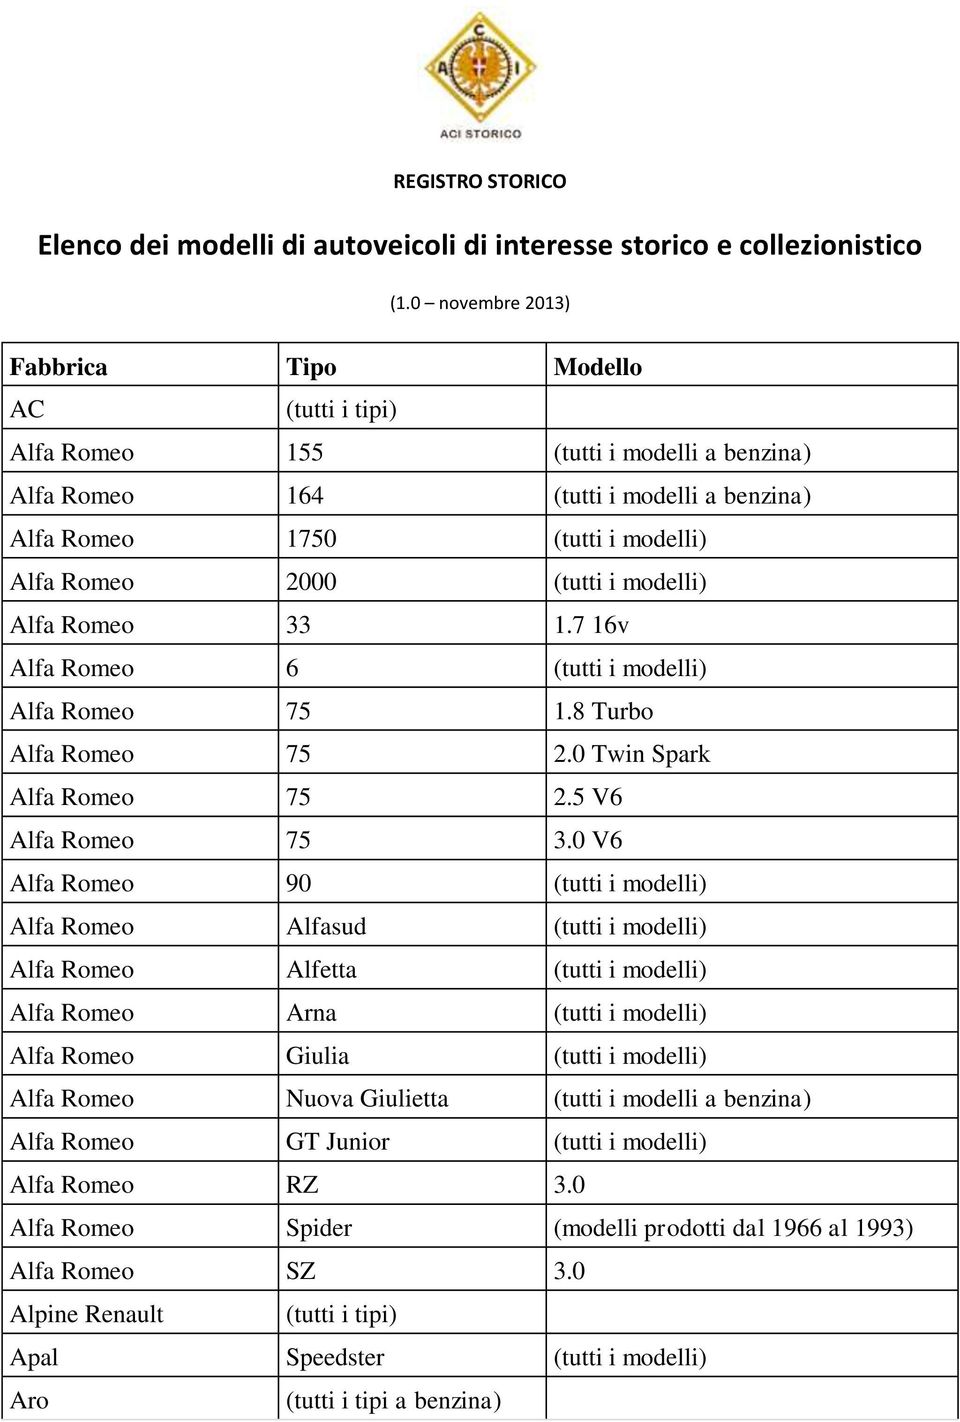 Alfa Romeo 33 1.7 16v Alfa Romeo 6 (tutti i modelli) Alfa Romeo 75 1.8 Turbo Alfa Romeo 75 2.0 Twin Spark Alfa Romeo 75 2.5 V6 Alfa Romeo 75 3.